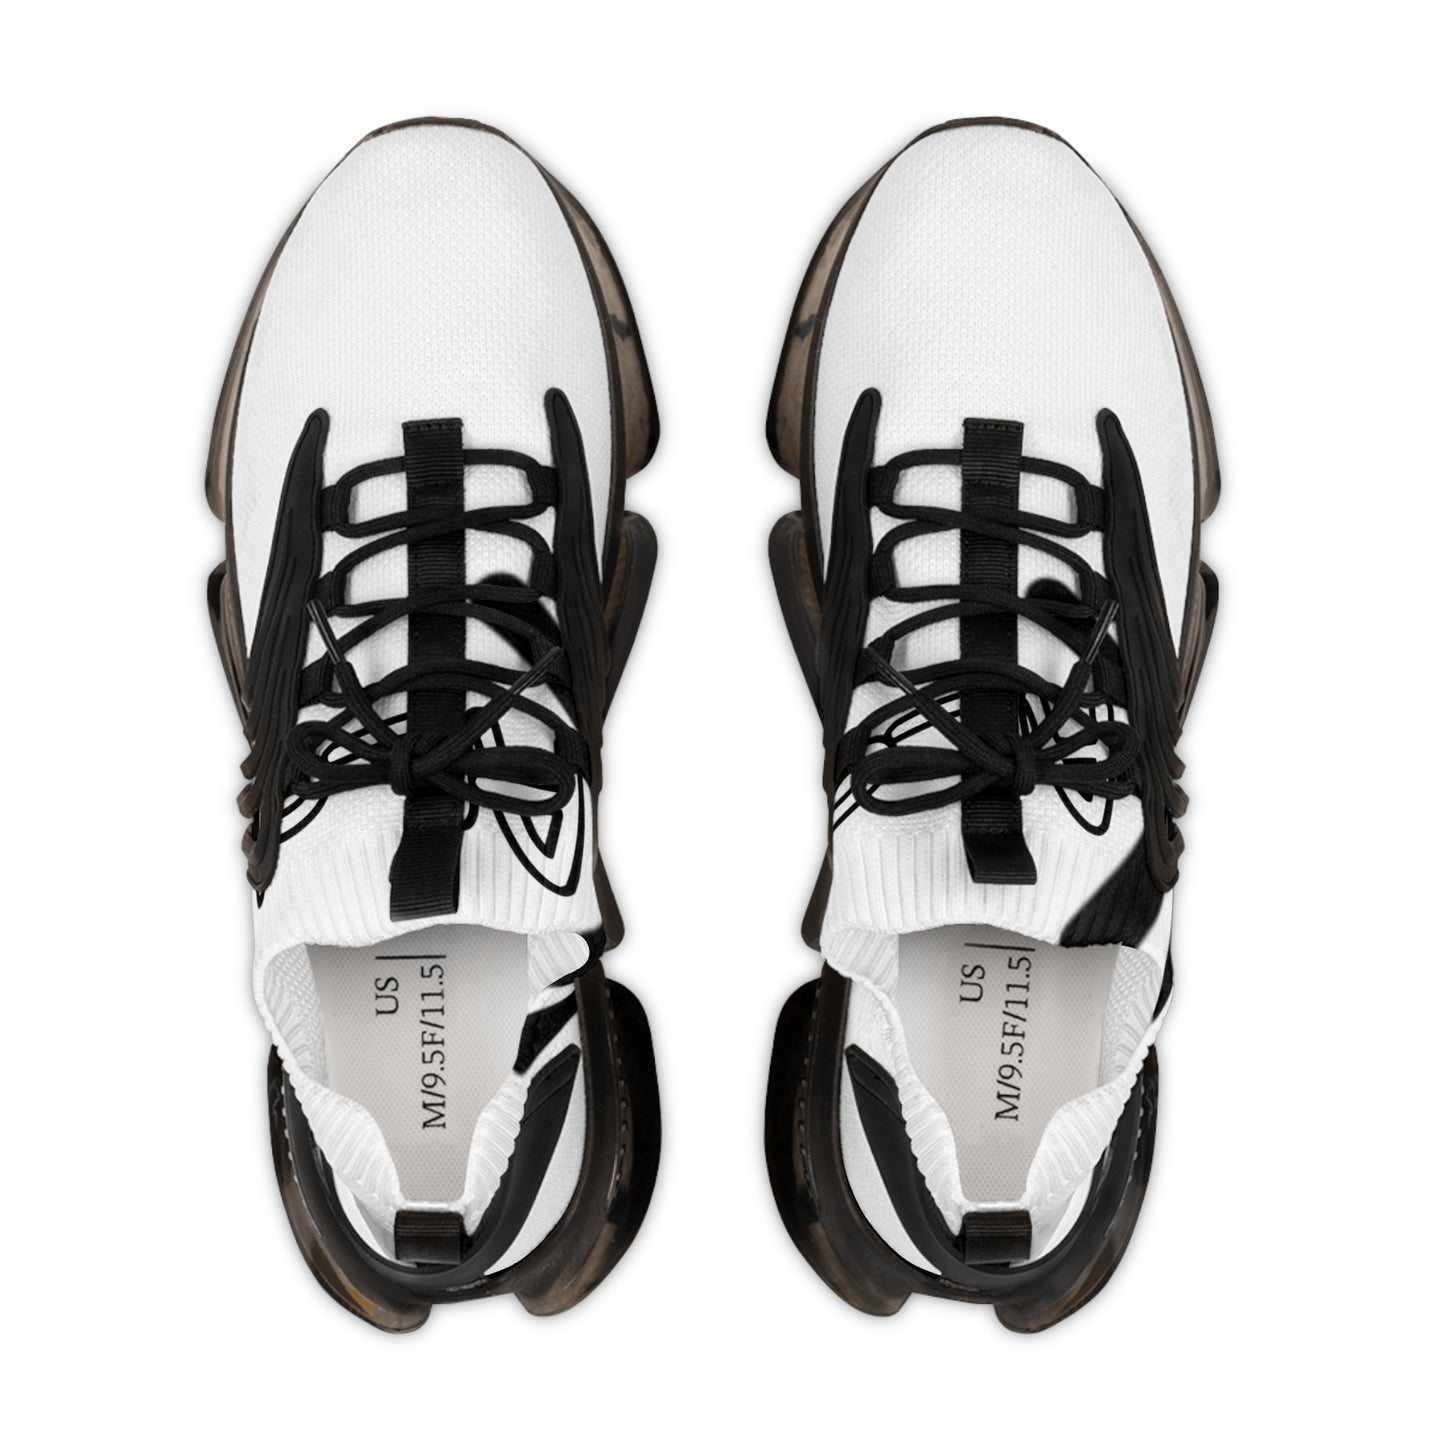 Men's Mesh Sneakers Zebra